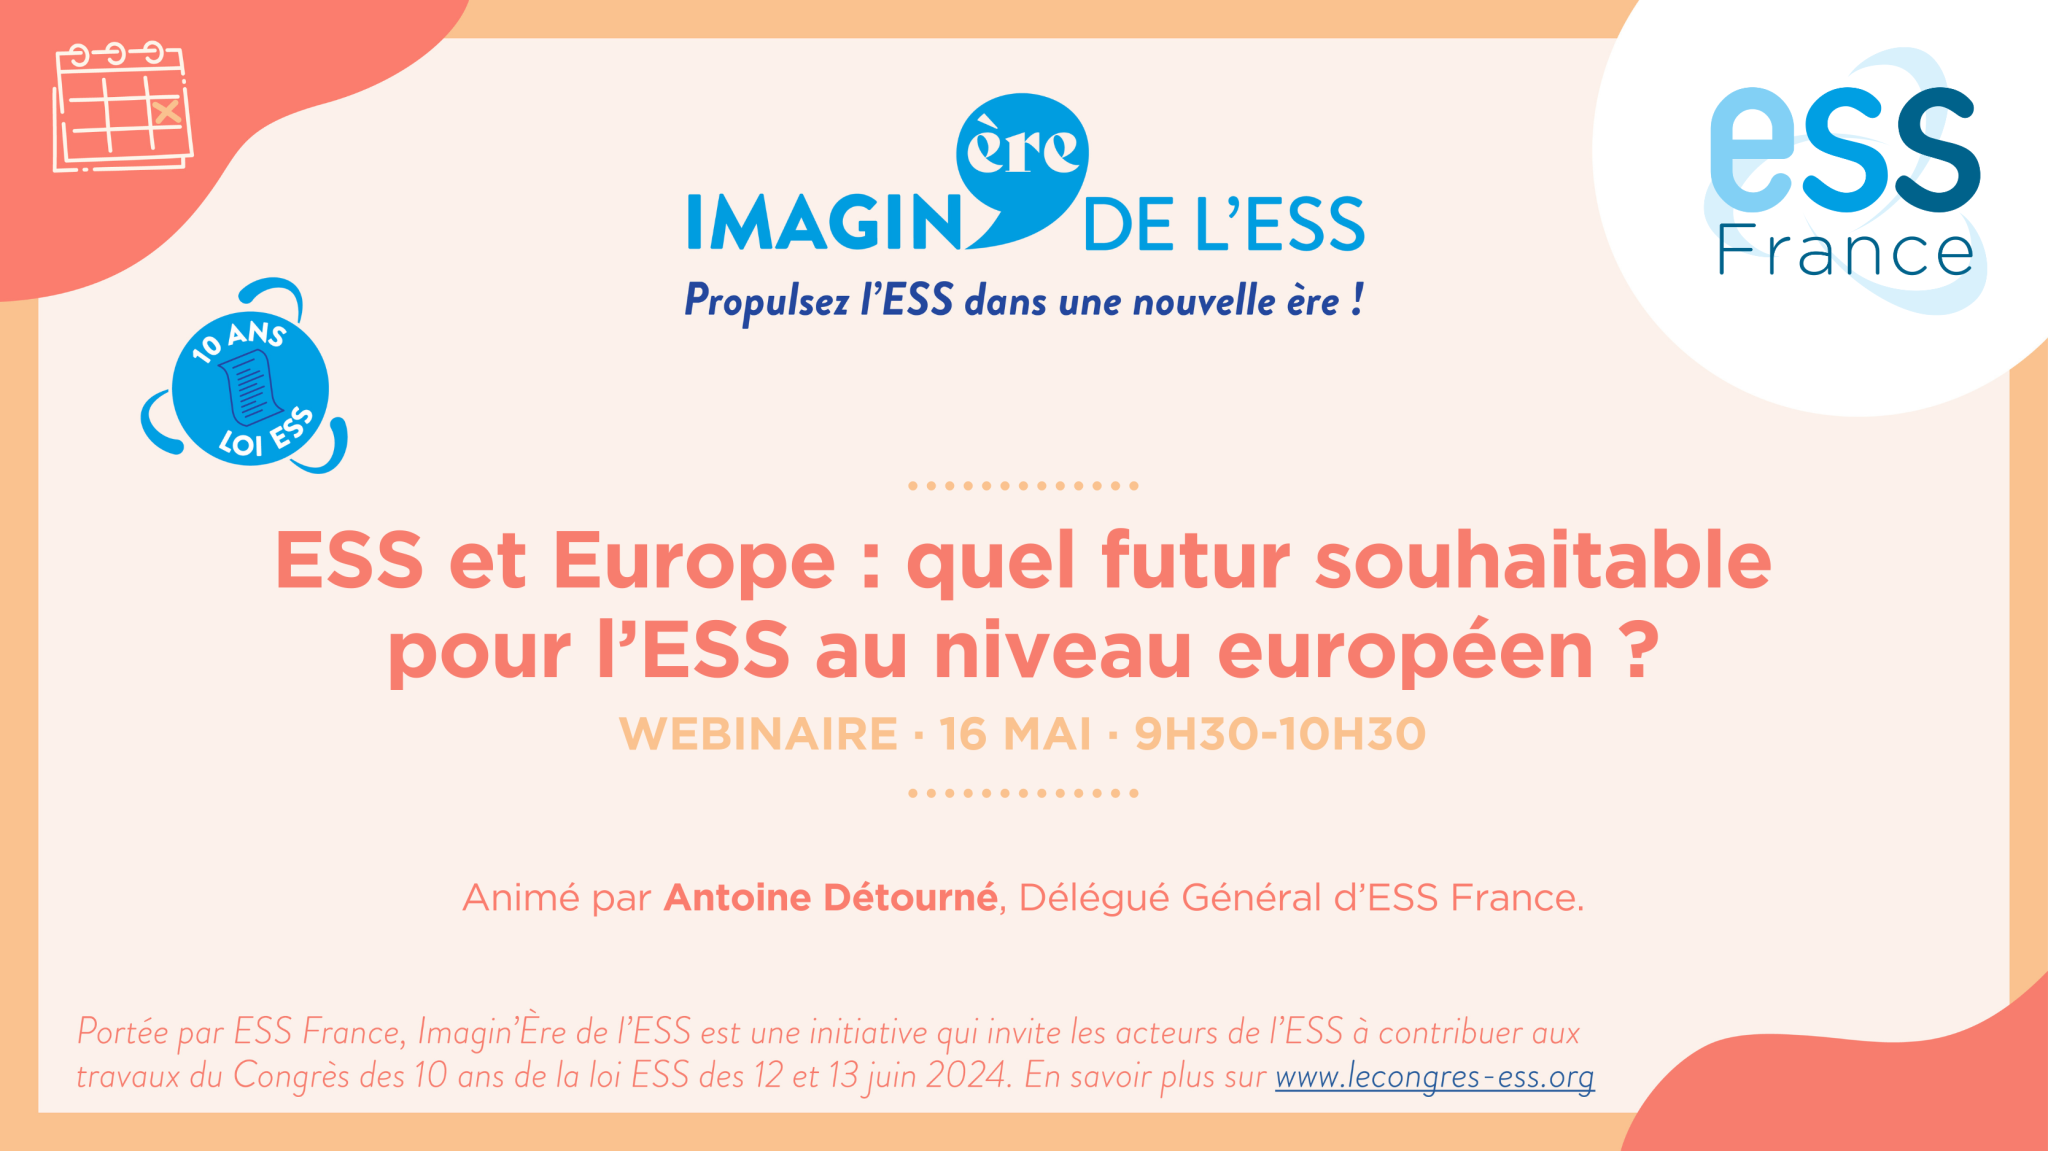 Webinaire d'ESS France le 16 mai sur l'ESS et l'Europe